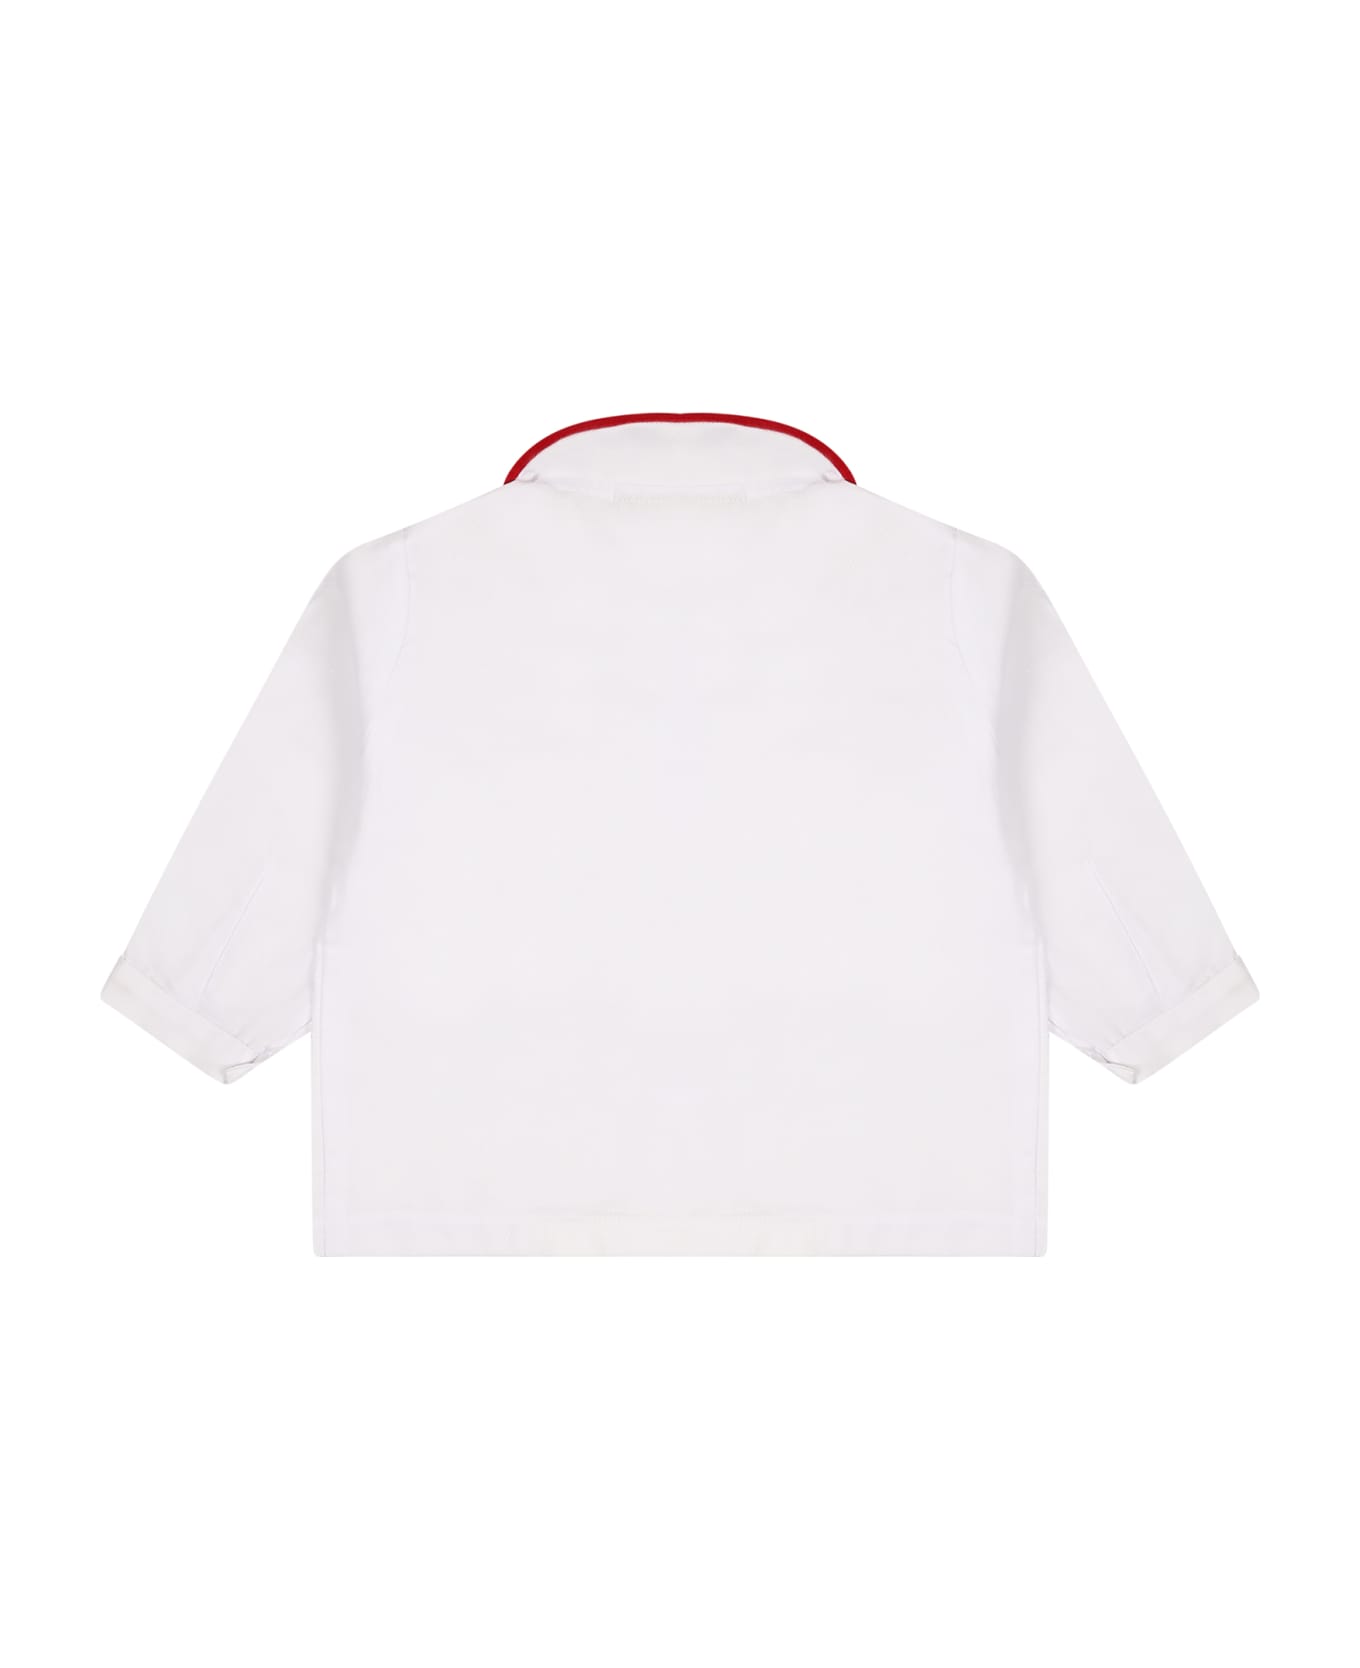 La stupenderia White Shirt For Baby Boy - White シャツ